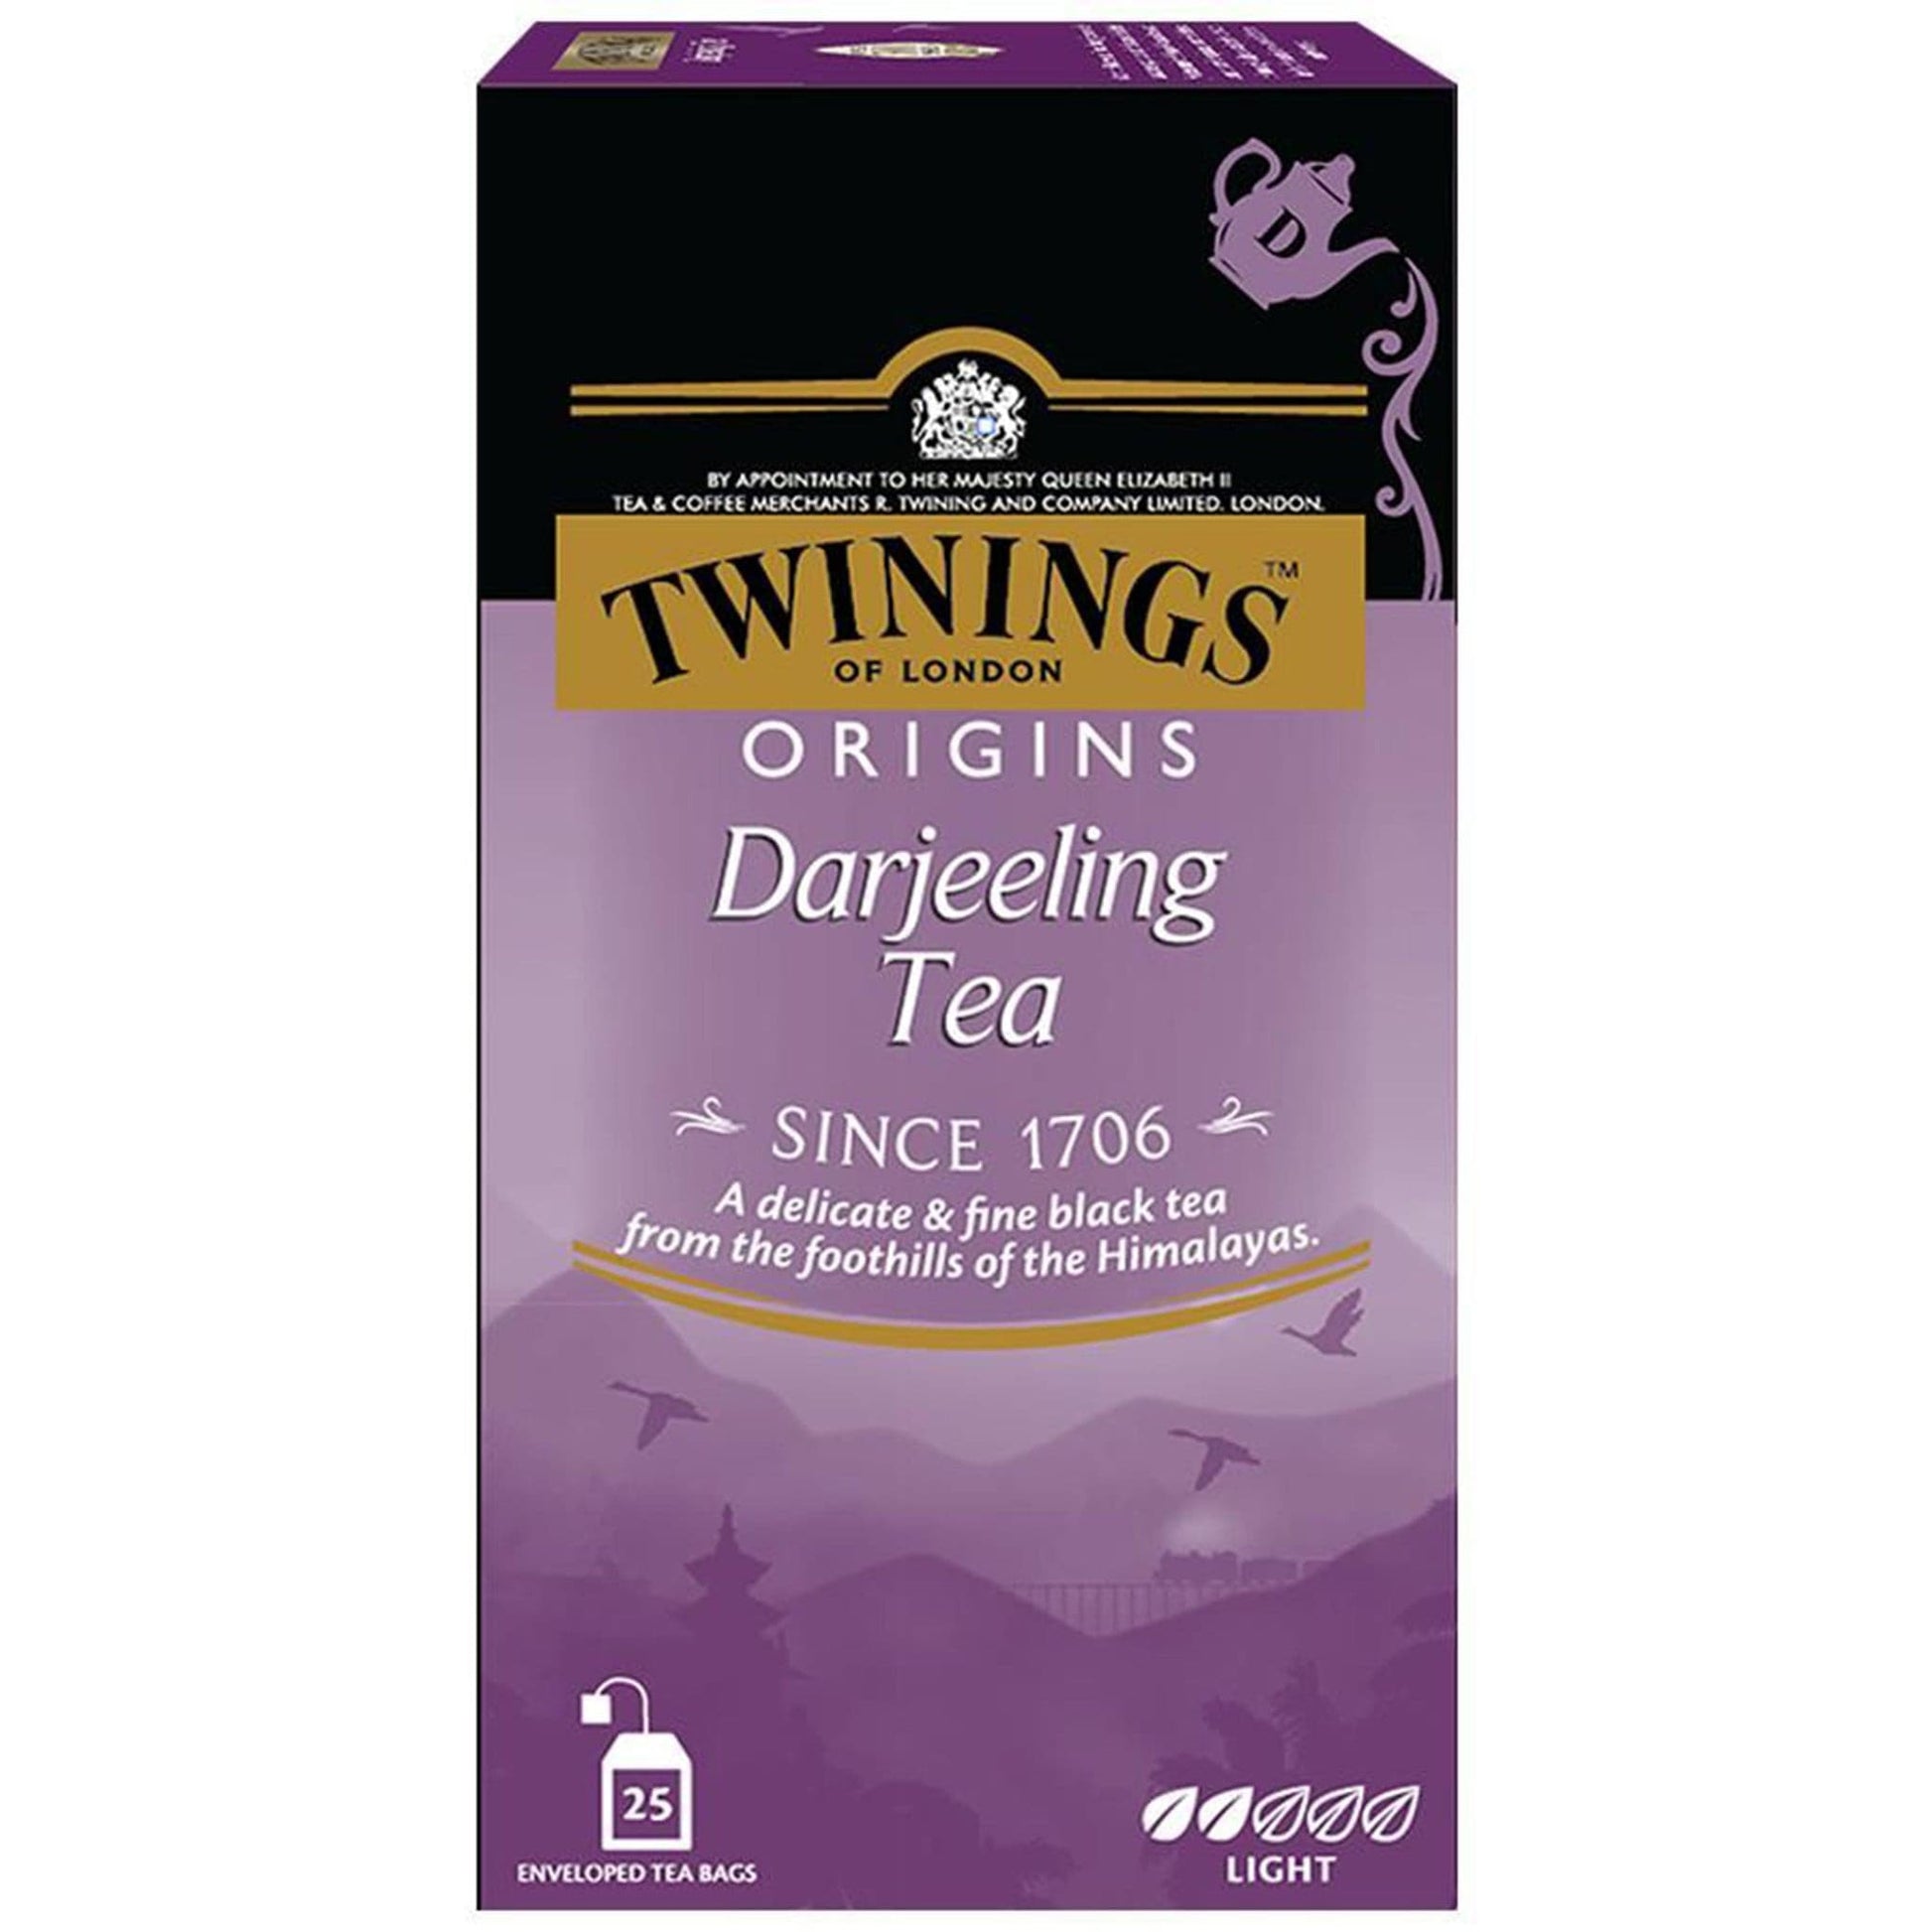 Twinings Origins Darjeeling Tea.